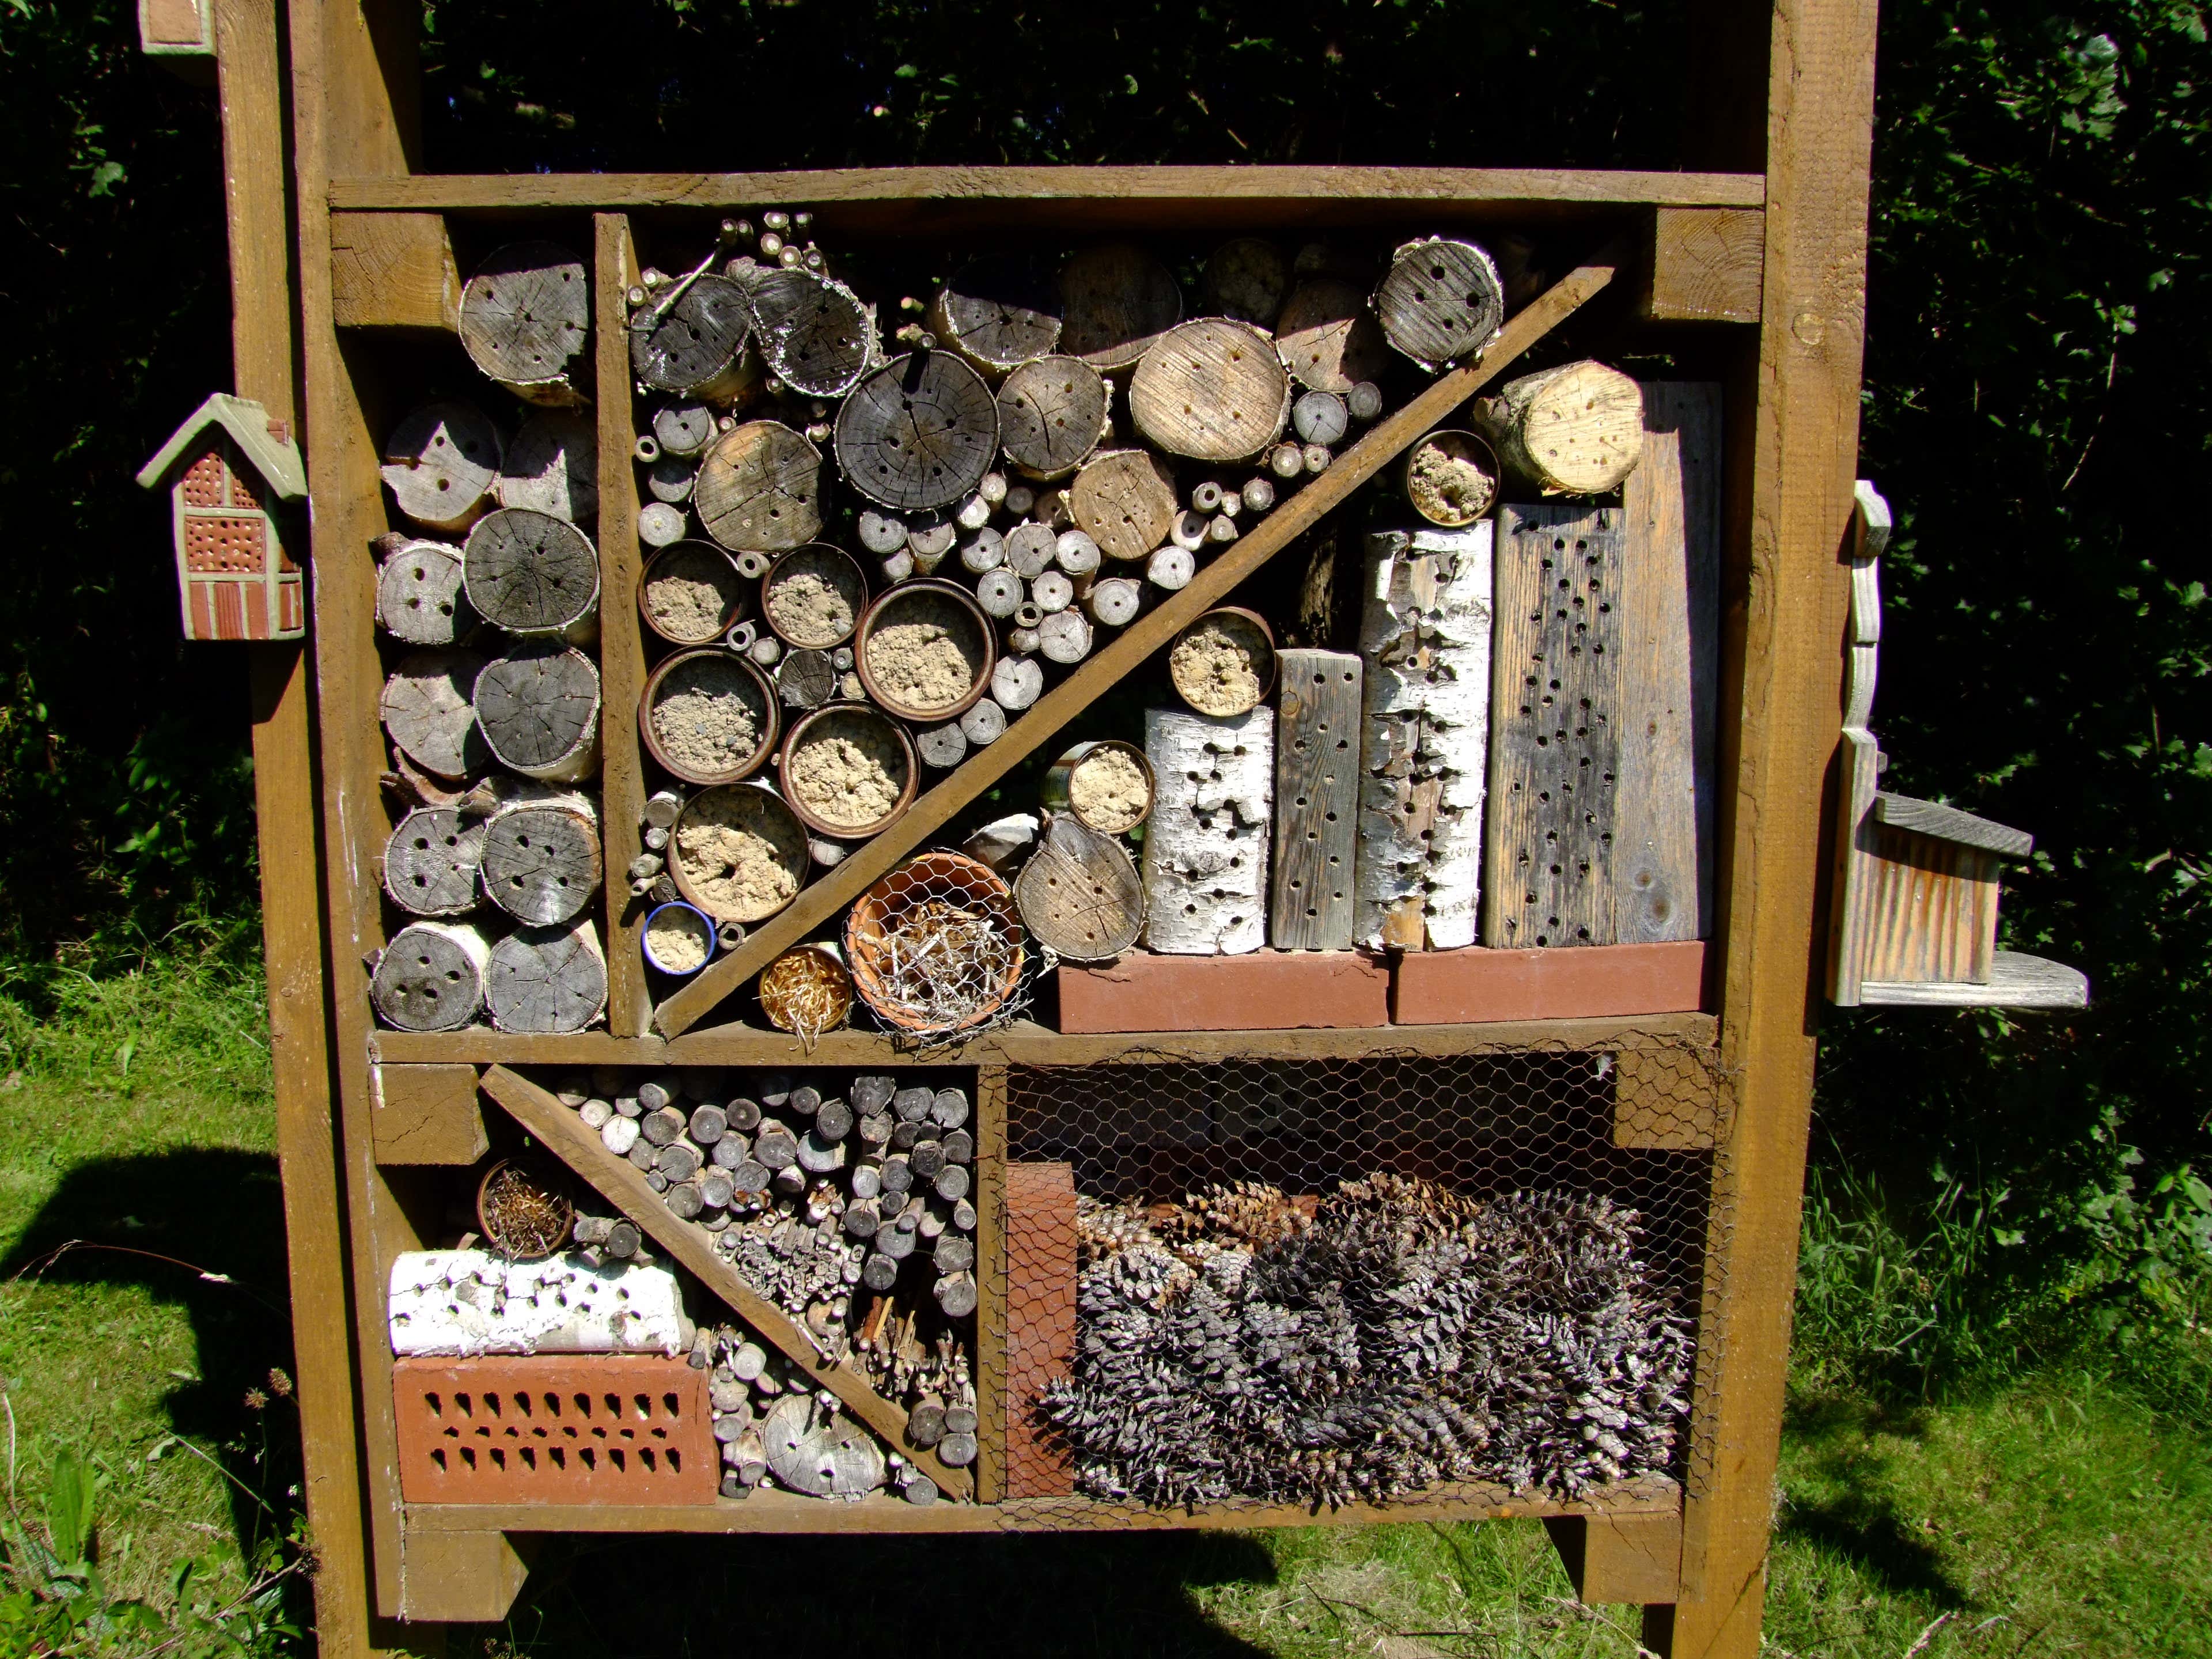 Auch Wildbienen fühlen sich im selbstgebauten Insektenhotel wohl. Wie Sie Bienen und anderen heimischen Tieren übrigens beim Überwintern im Garten helfen, erfahren Sie hier.